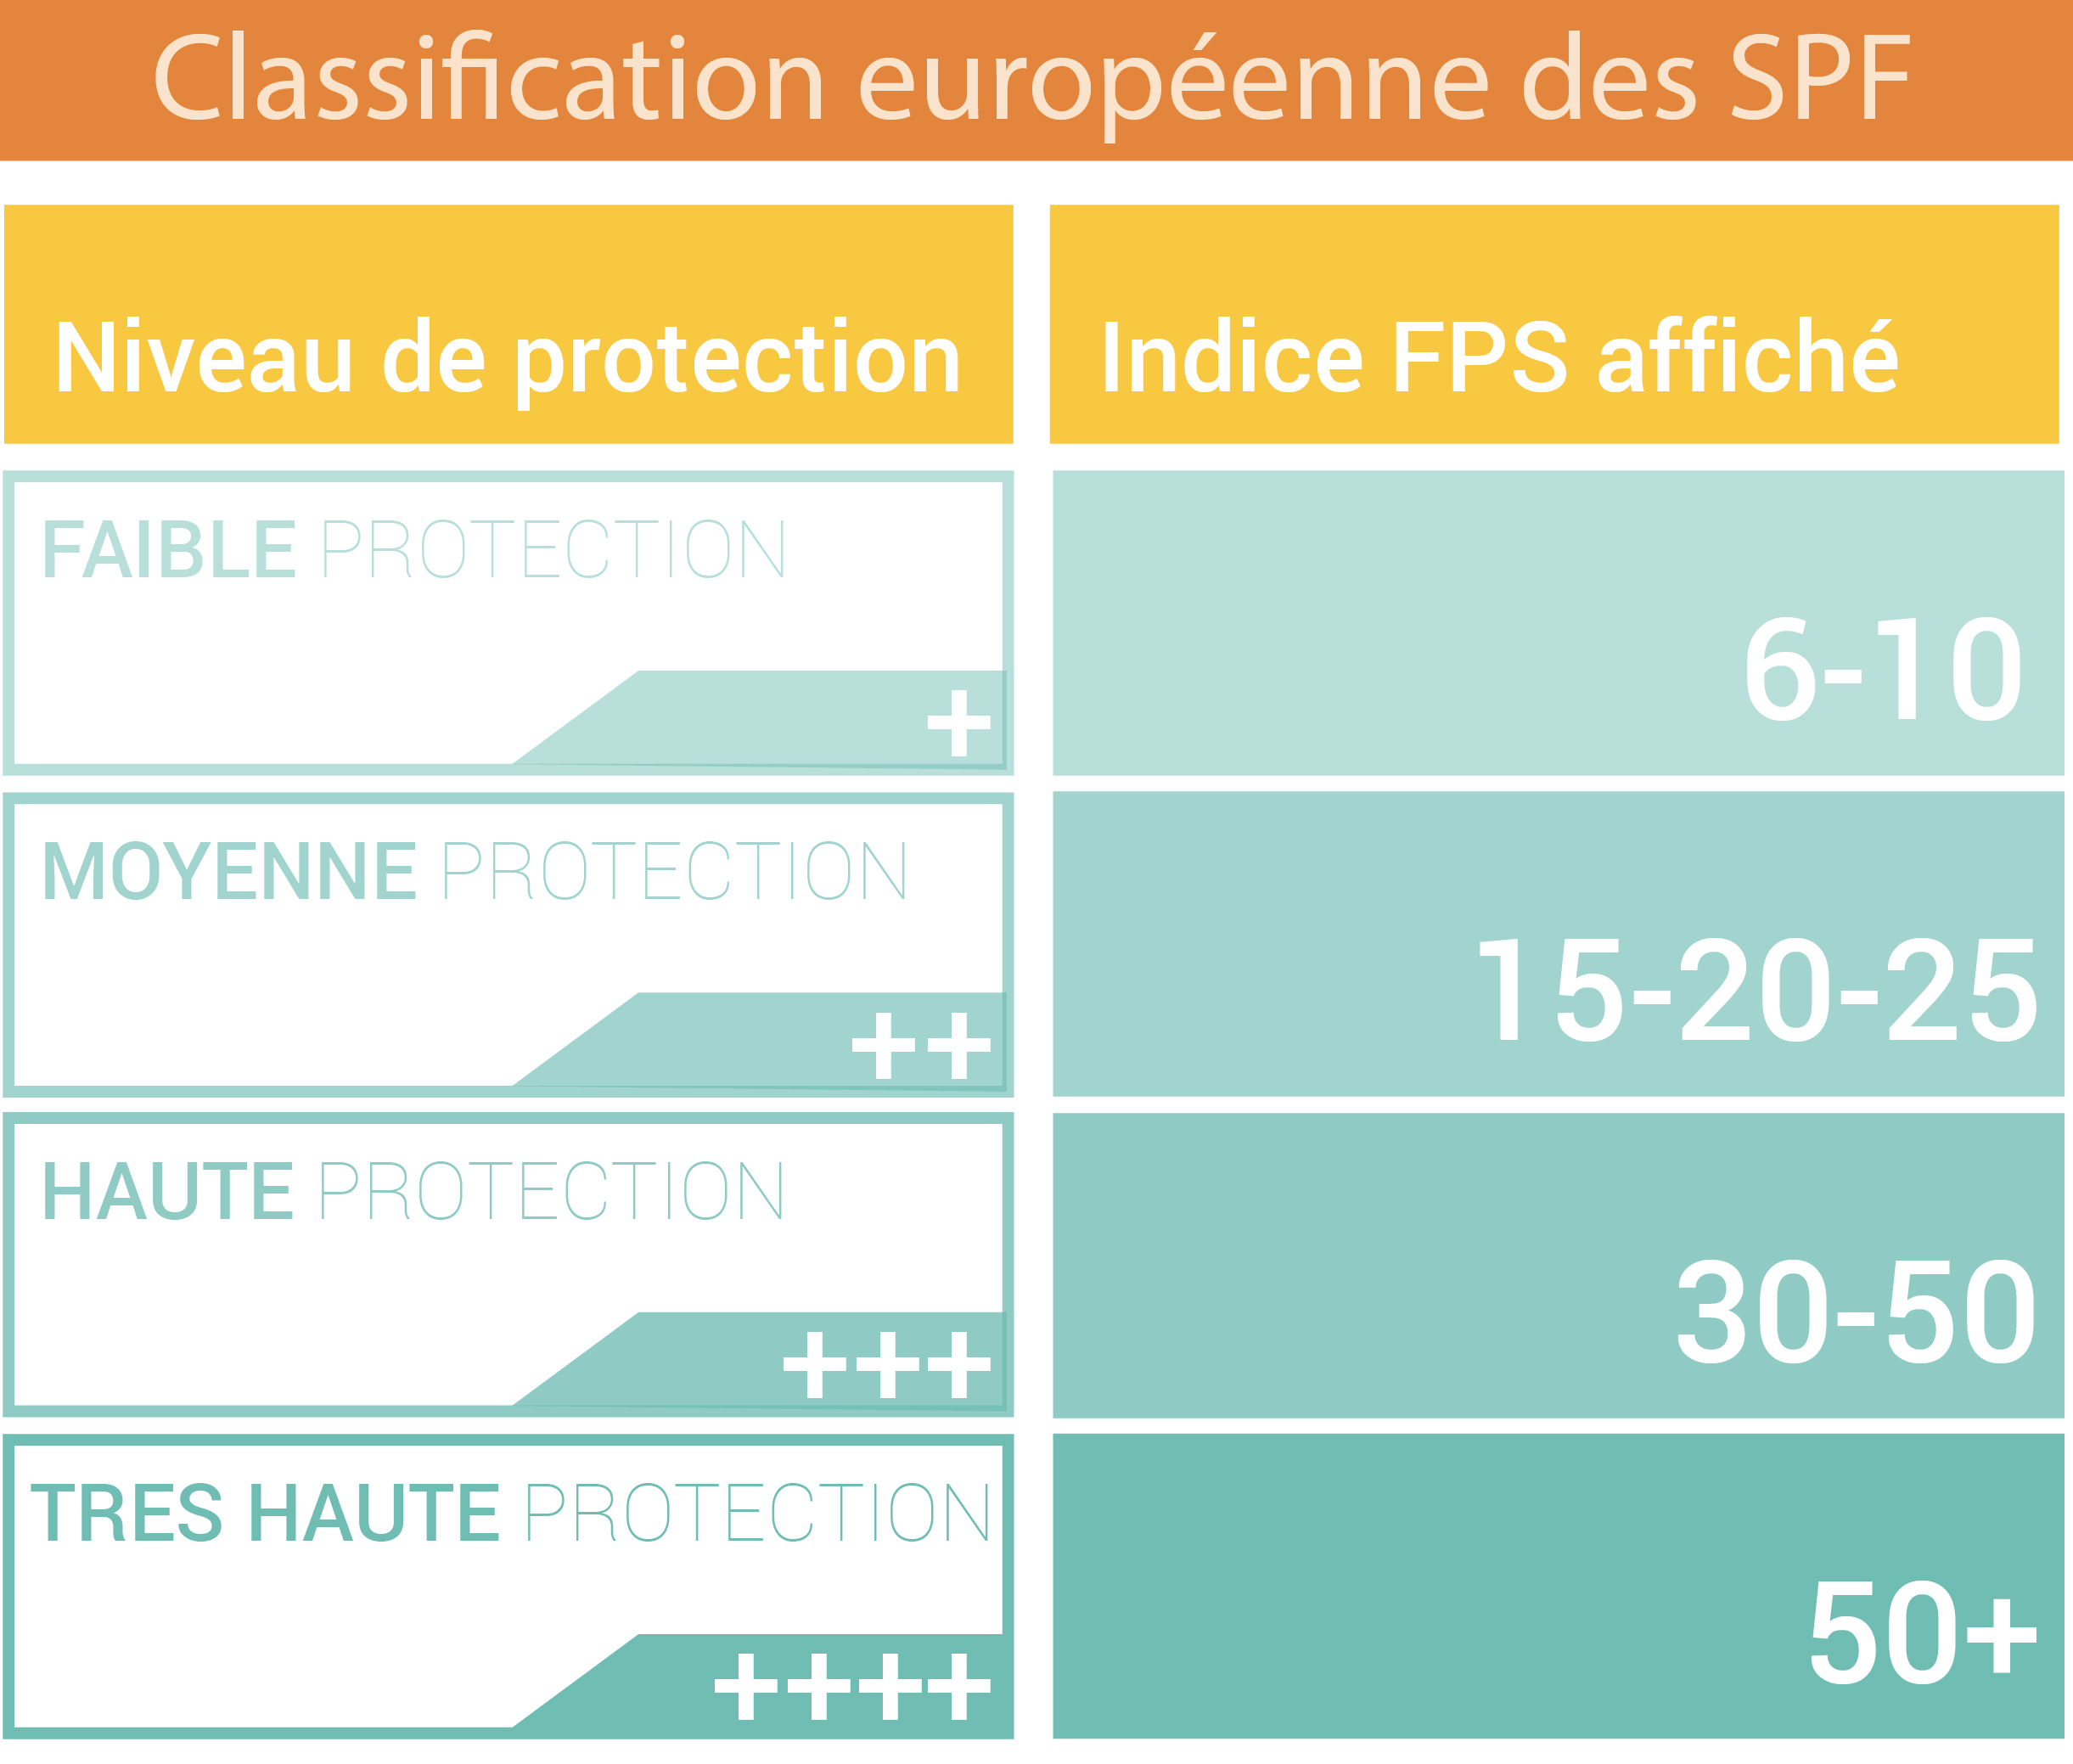 Classification européenne des SPF